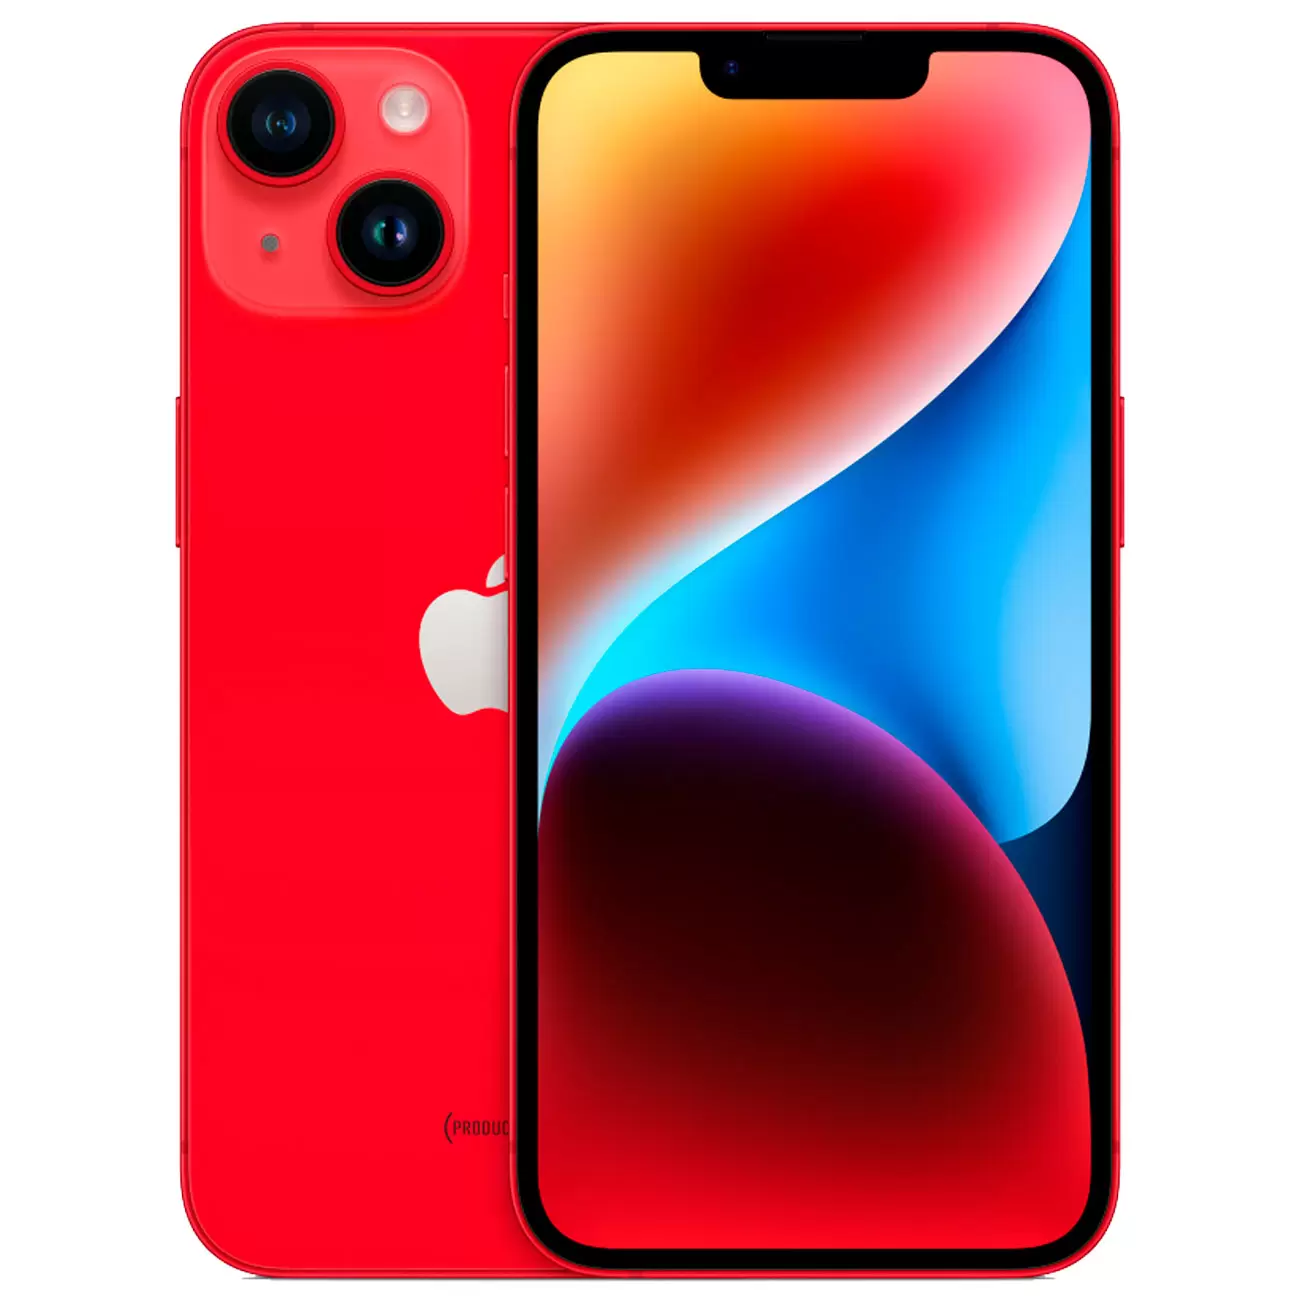 Купить Смартфон Apple iPhone 14 128GB (PRODUCT)RED 61 990 руб. Apple iPhone  14 в официальном магазине Apple, Samsung, Xiaomi. iPixel.ru смартфон apple  iphone 14 128gb (product)red в городе. доставка, заказ, кредит, рассрочка,